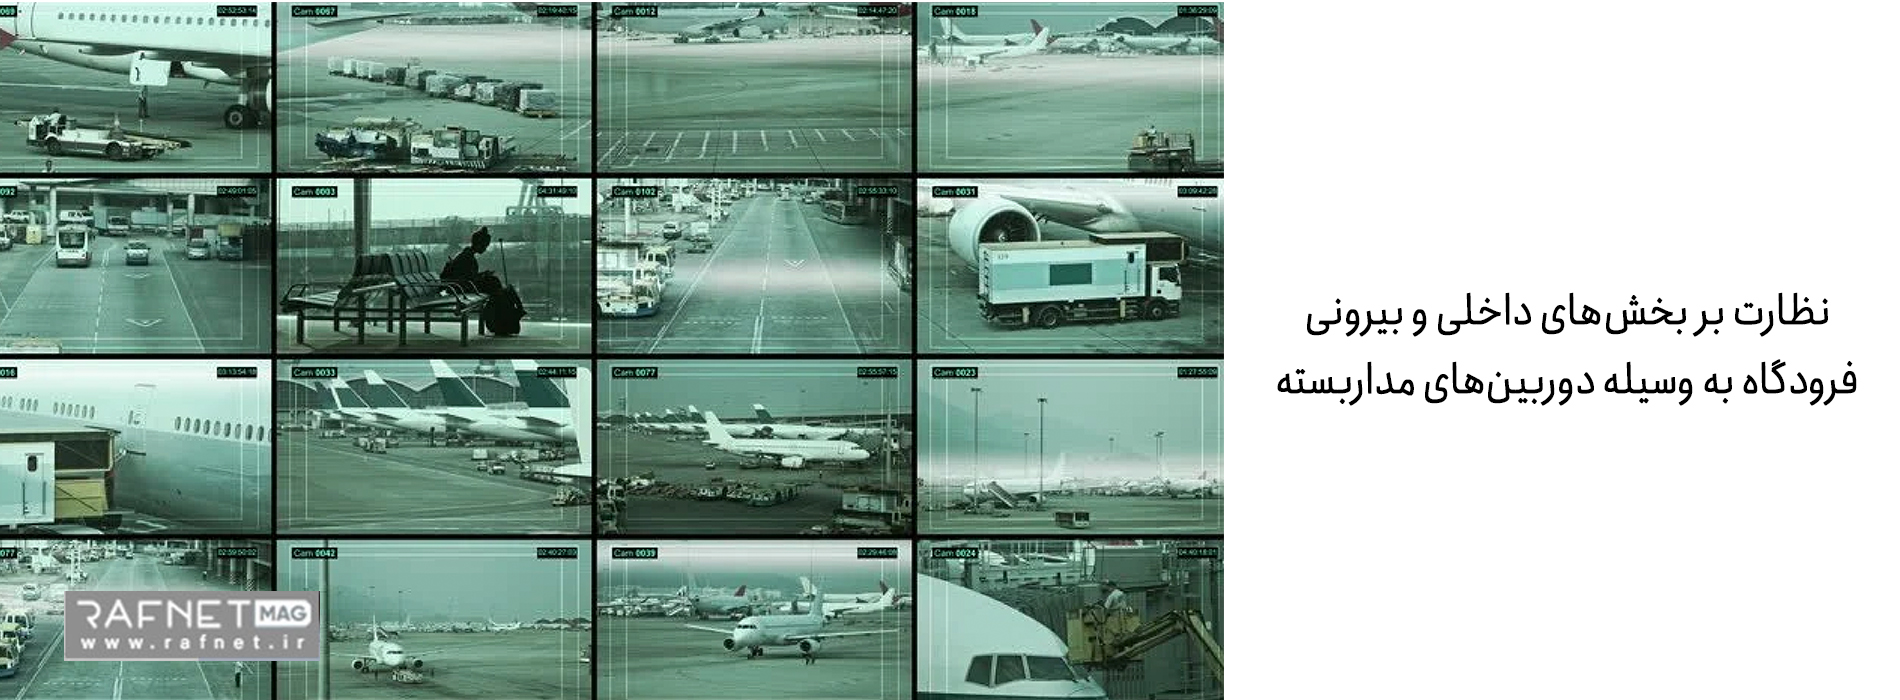 نظارت بر محیط درونی و بیرونی فرودگاه به دوربین مداربسته